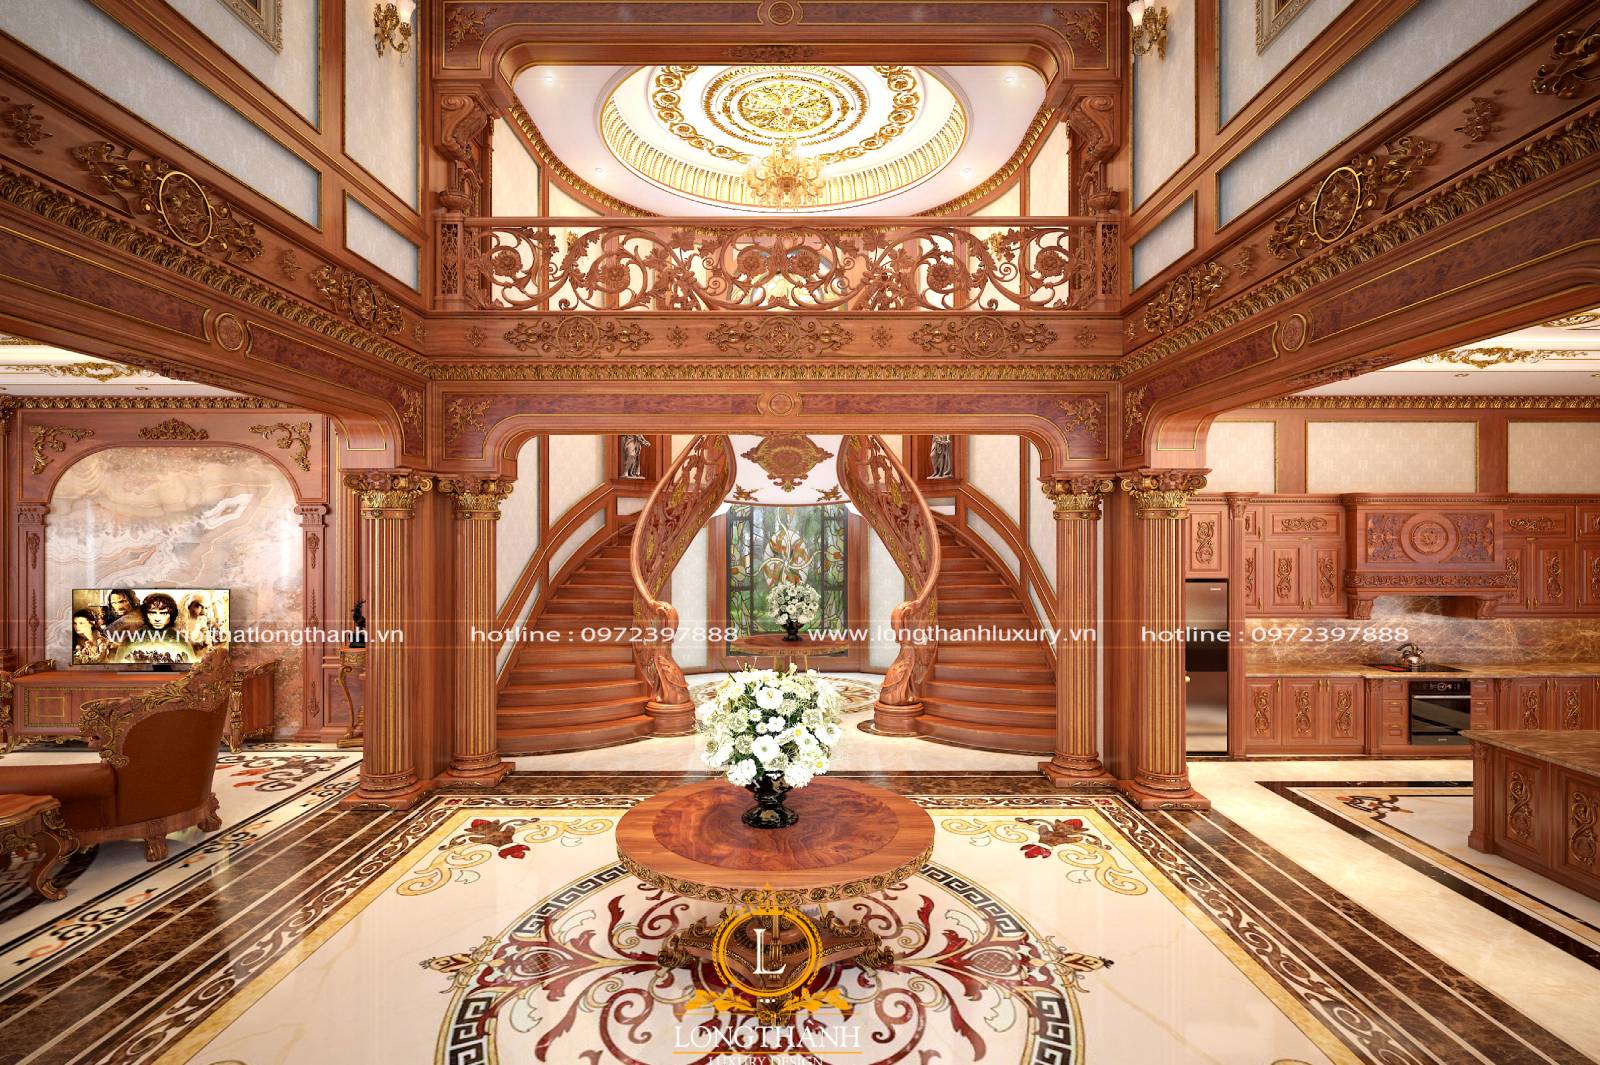 Phòng khách có cầu thang được thiết kế theo kiểu cổ điển truyền thống